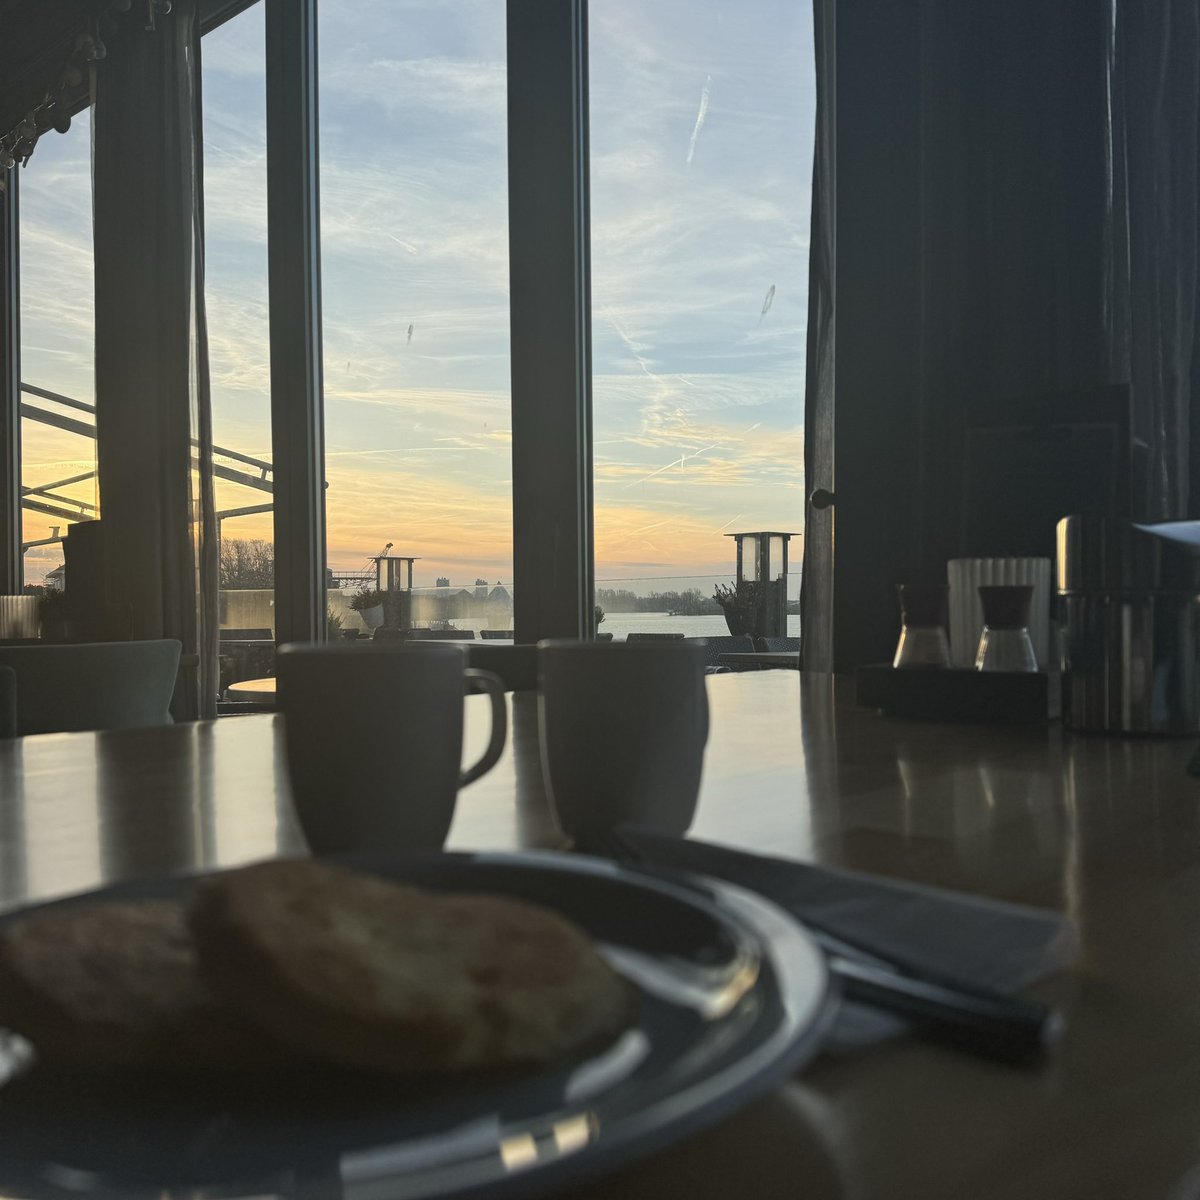 #hotelontbijtje... mét zonsopgang over’t water… 🙂

#myview #eten #ontbijt #koffie #geenroerei #spiegelei #spek #hotel #HotelRestaurantZalenHoogeerd #hotelNiftrik #Niftrik #Wijchen